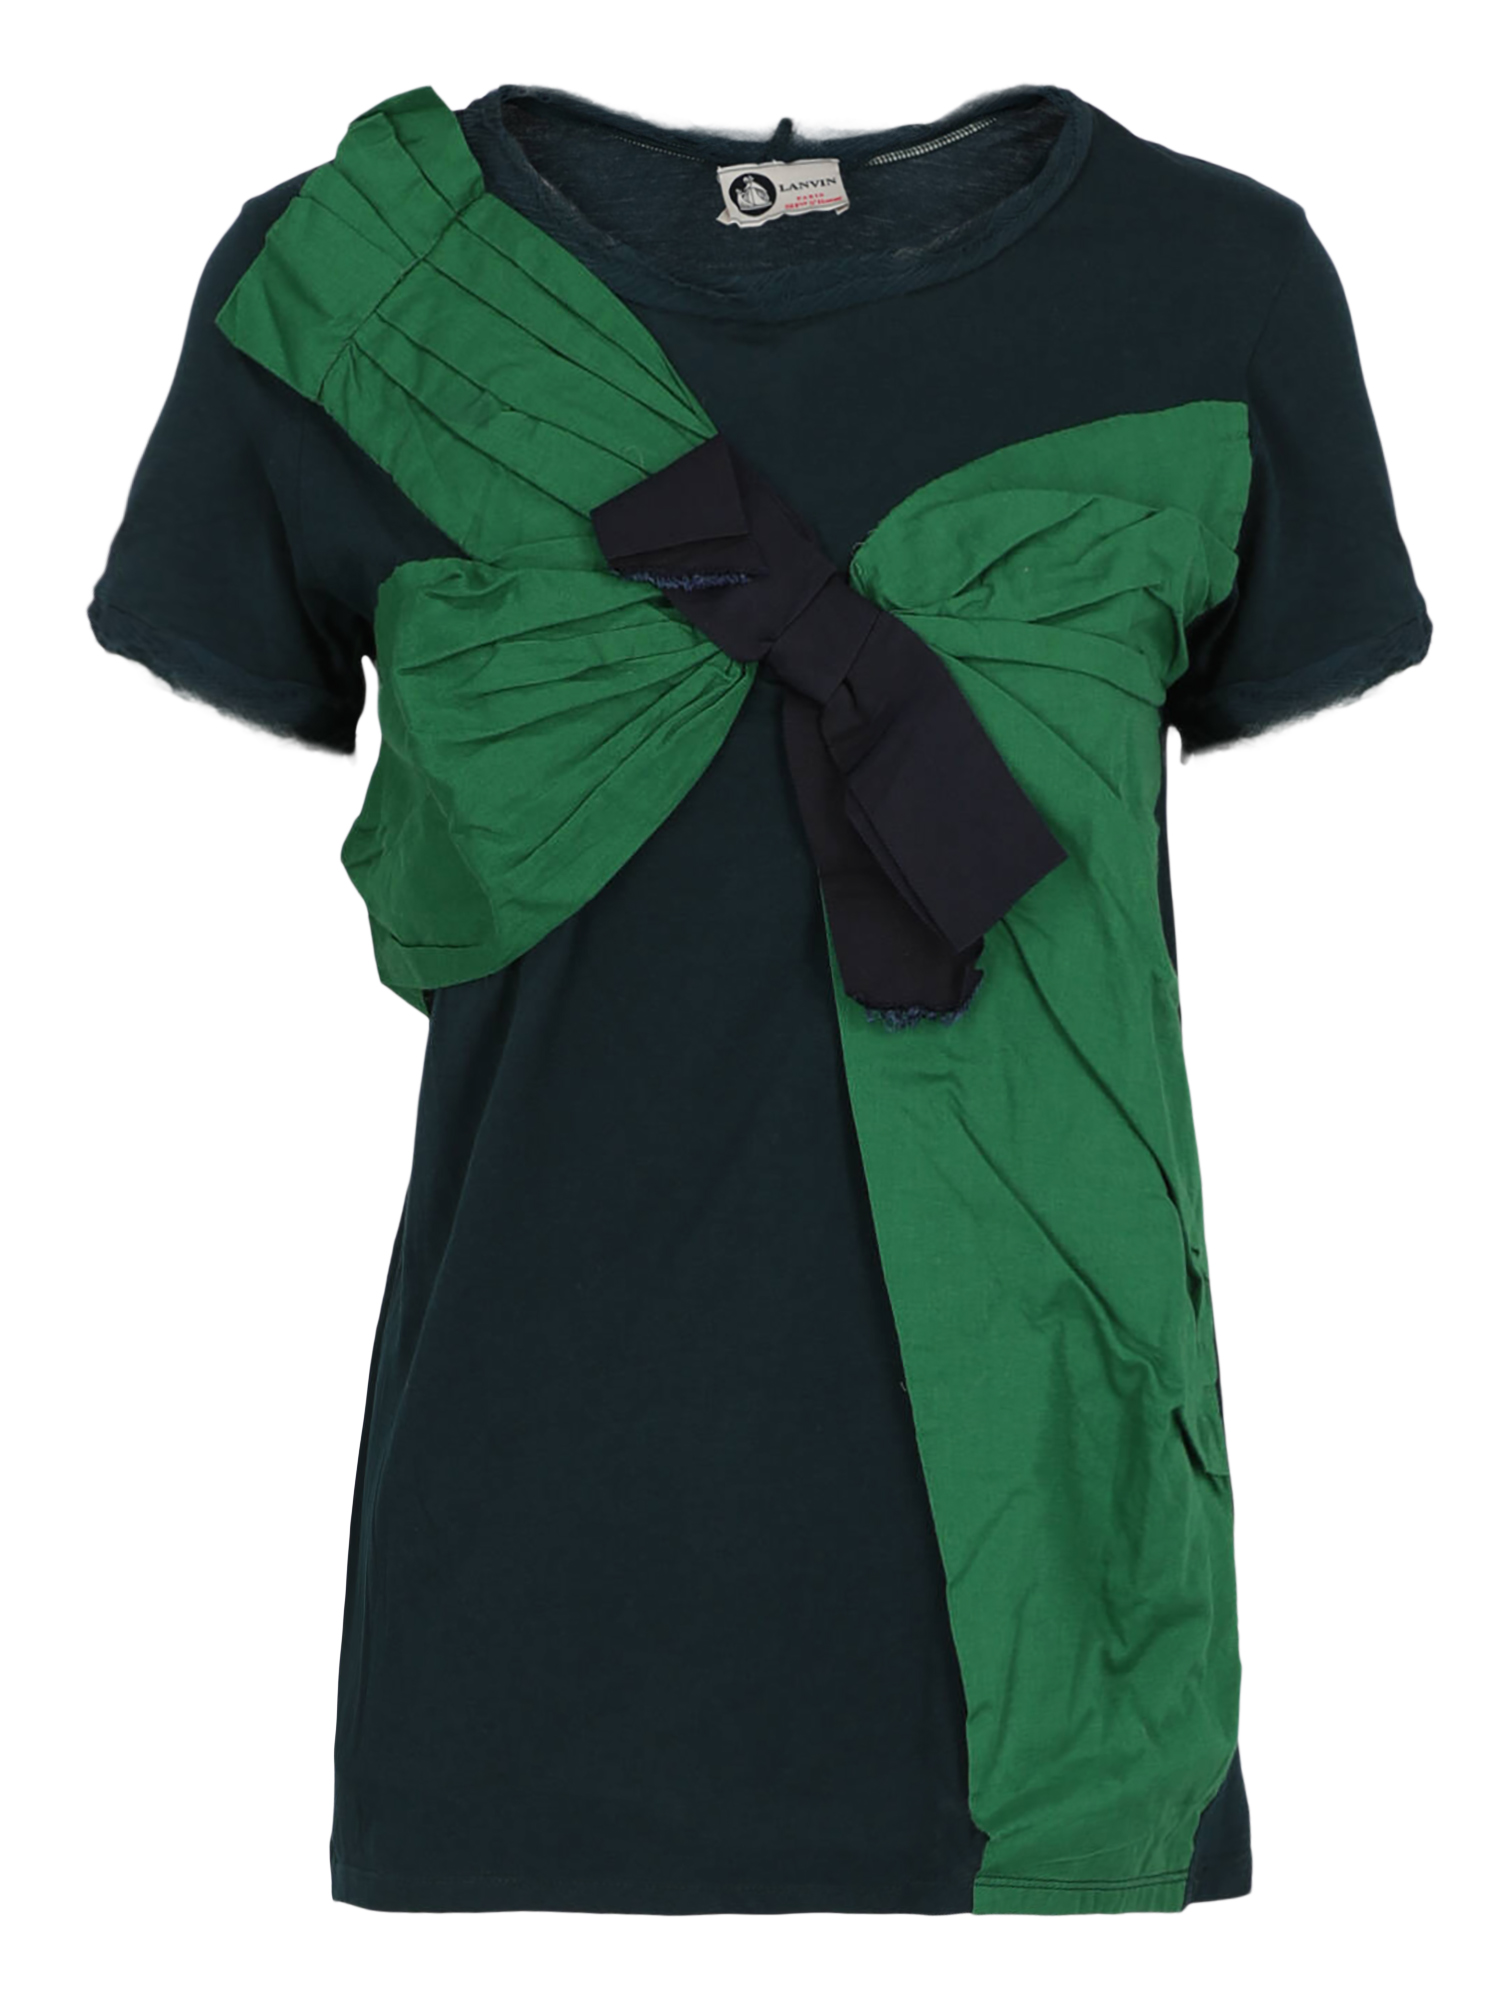 T-shirts Et Tops Pour Femme - Lanvin - En Cotton Green - Taille:  -